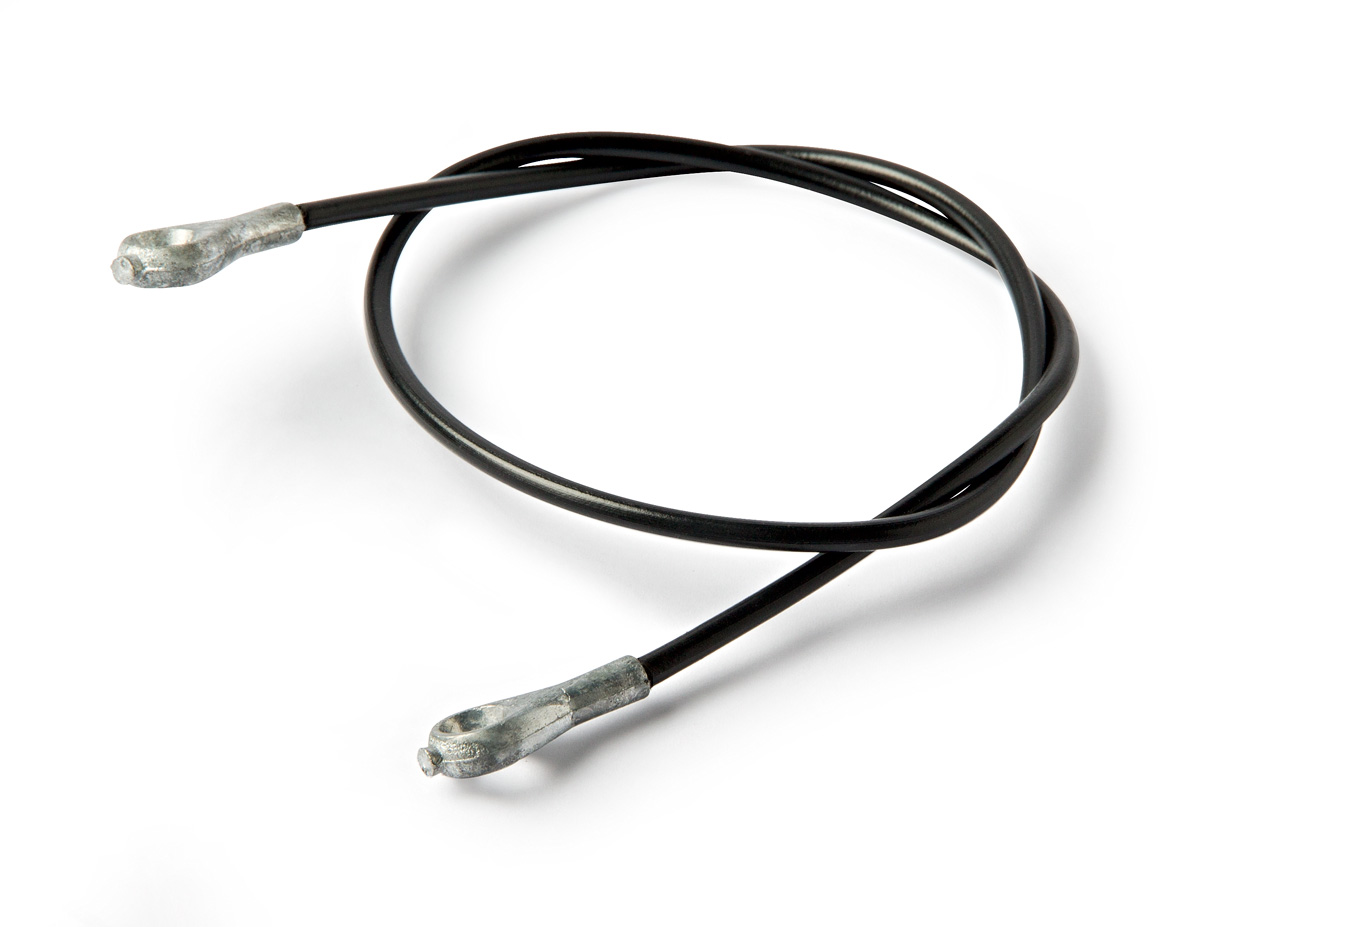 Sicherungsseil
Cable
Câble de sécurité
Cuerda de asegurami